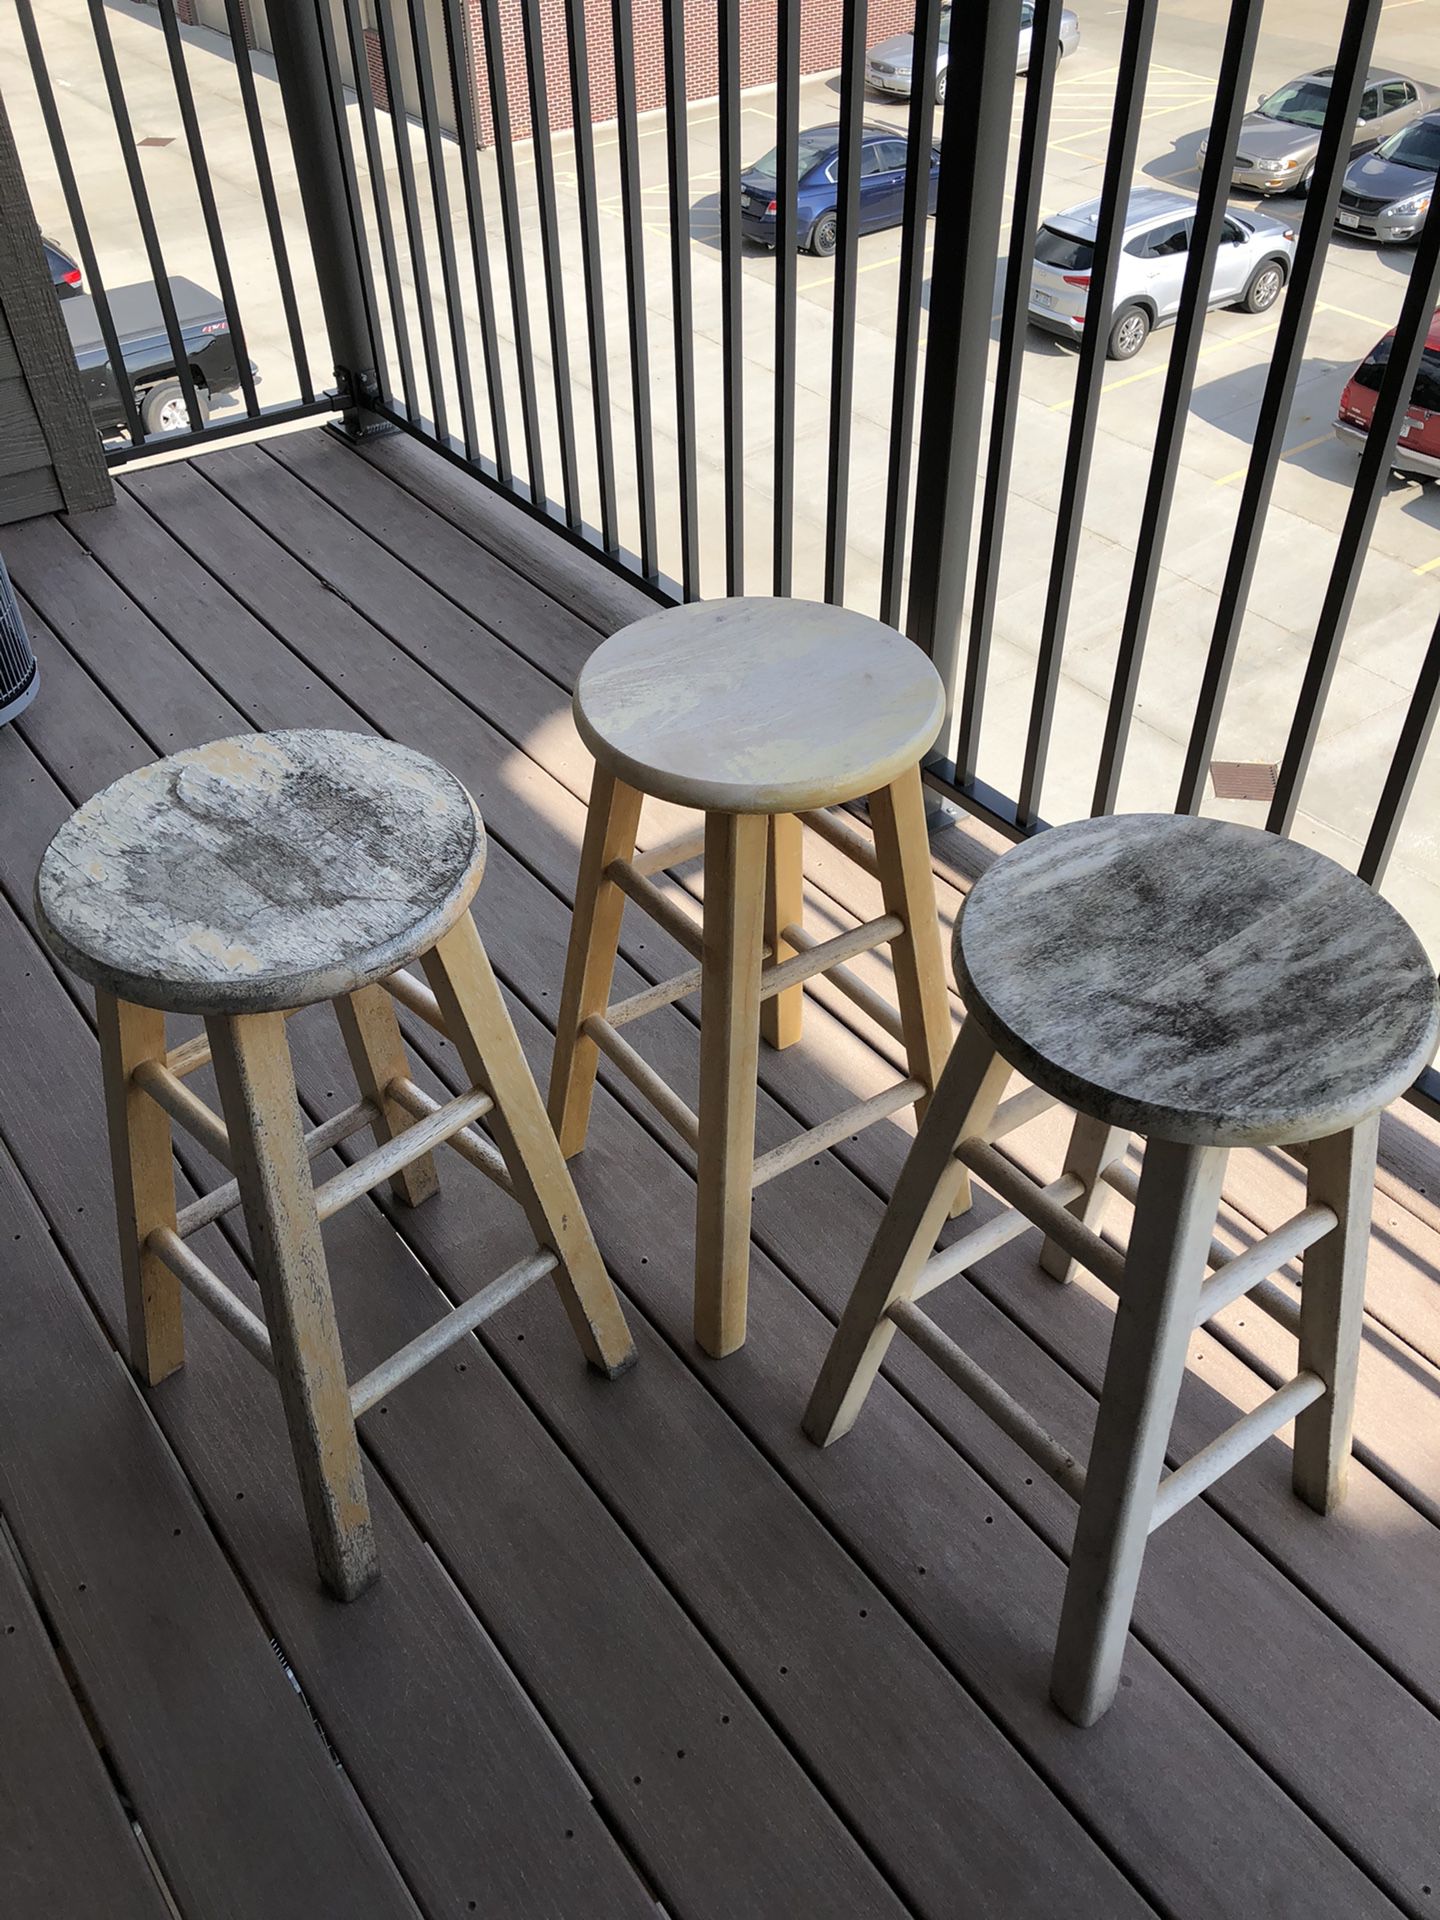 Deck stools